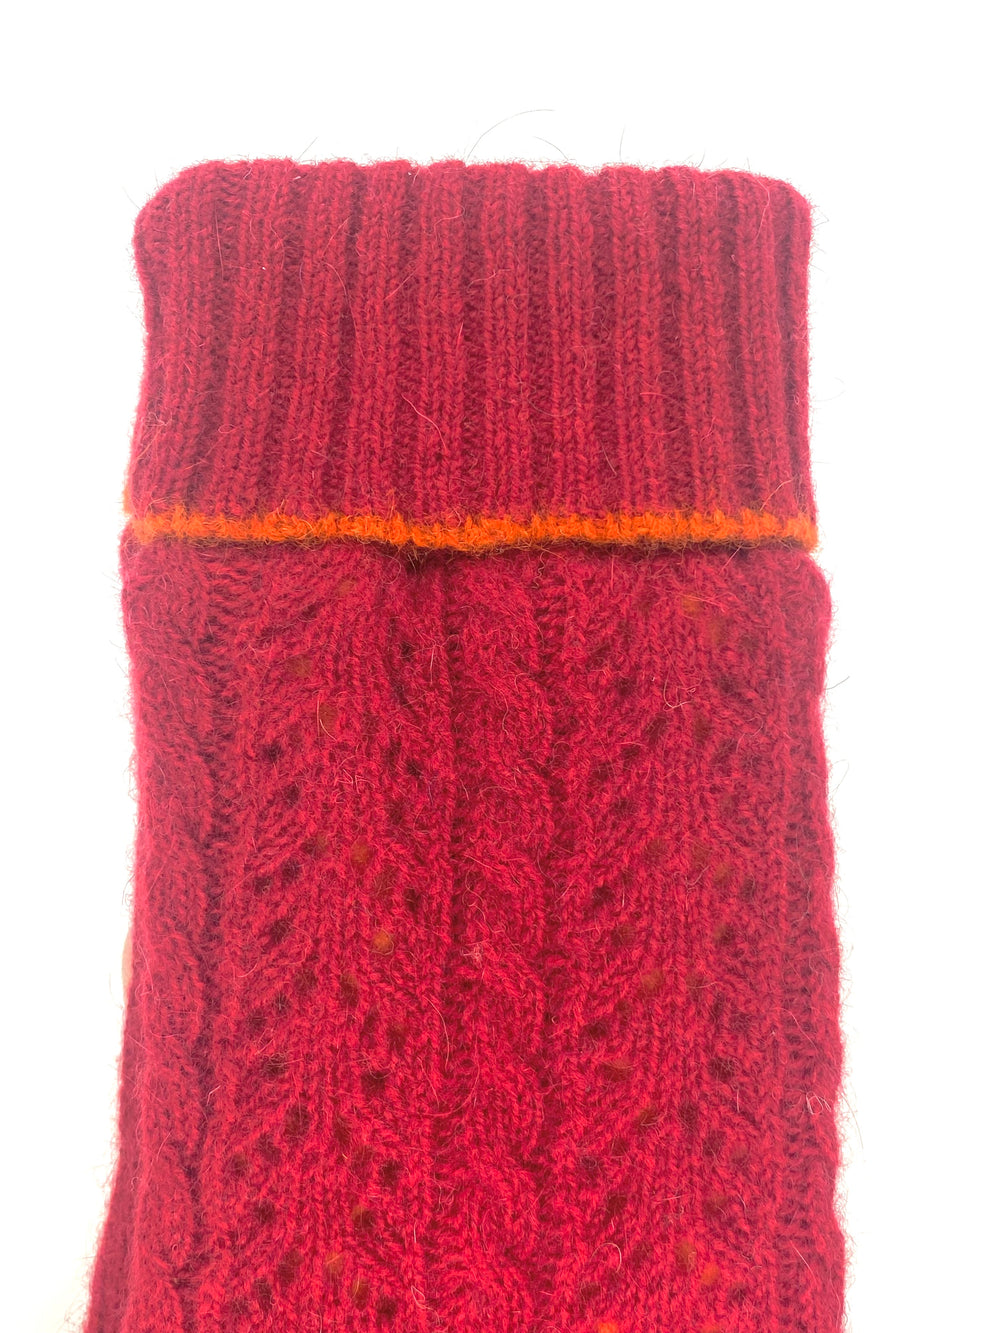 Lauer gloves, angora-blend fleece-lined